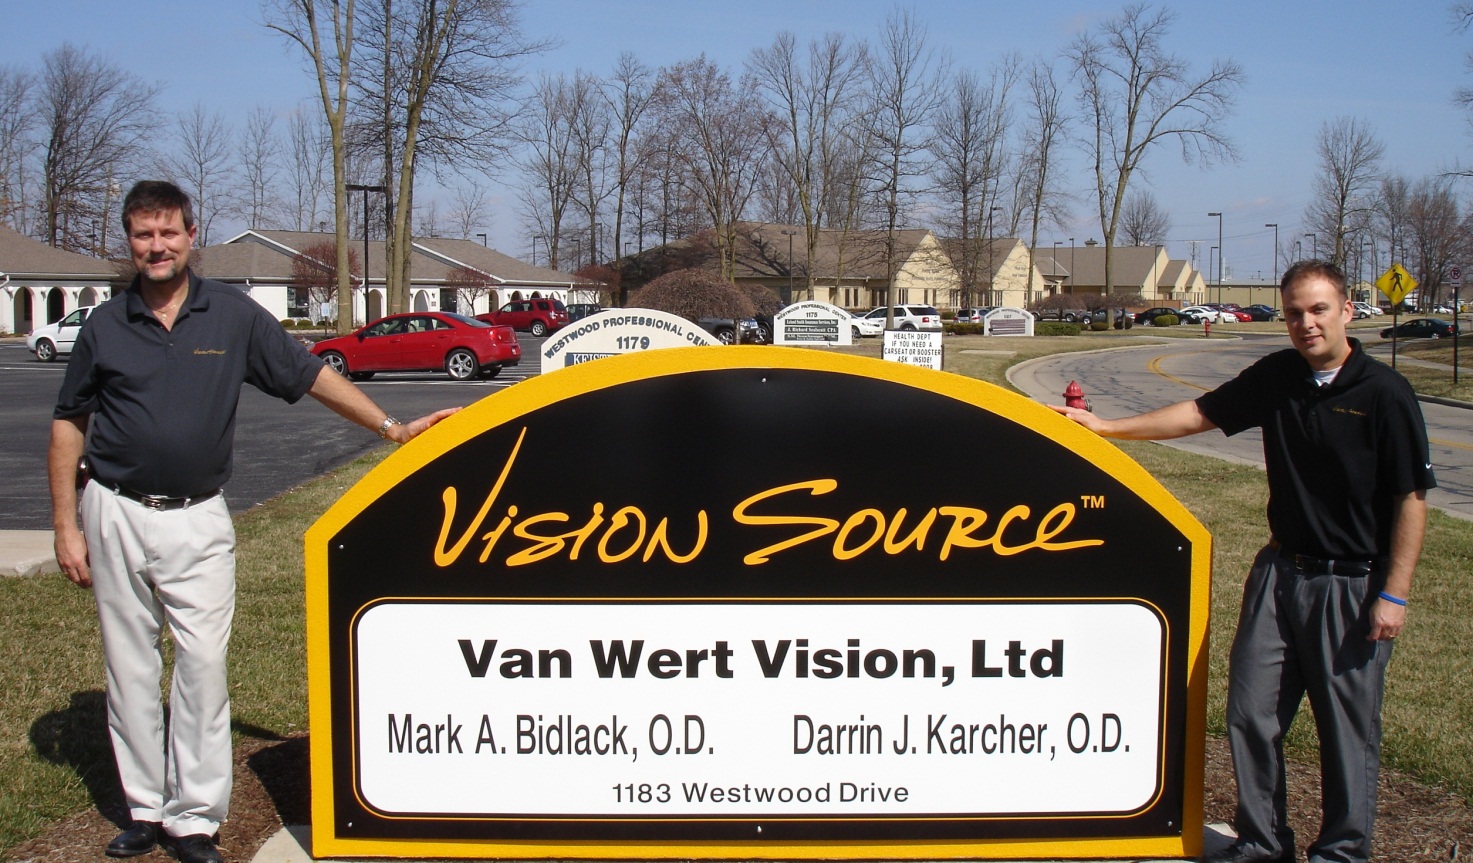 Van Wert Vision, LTD.